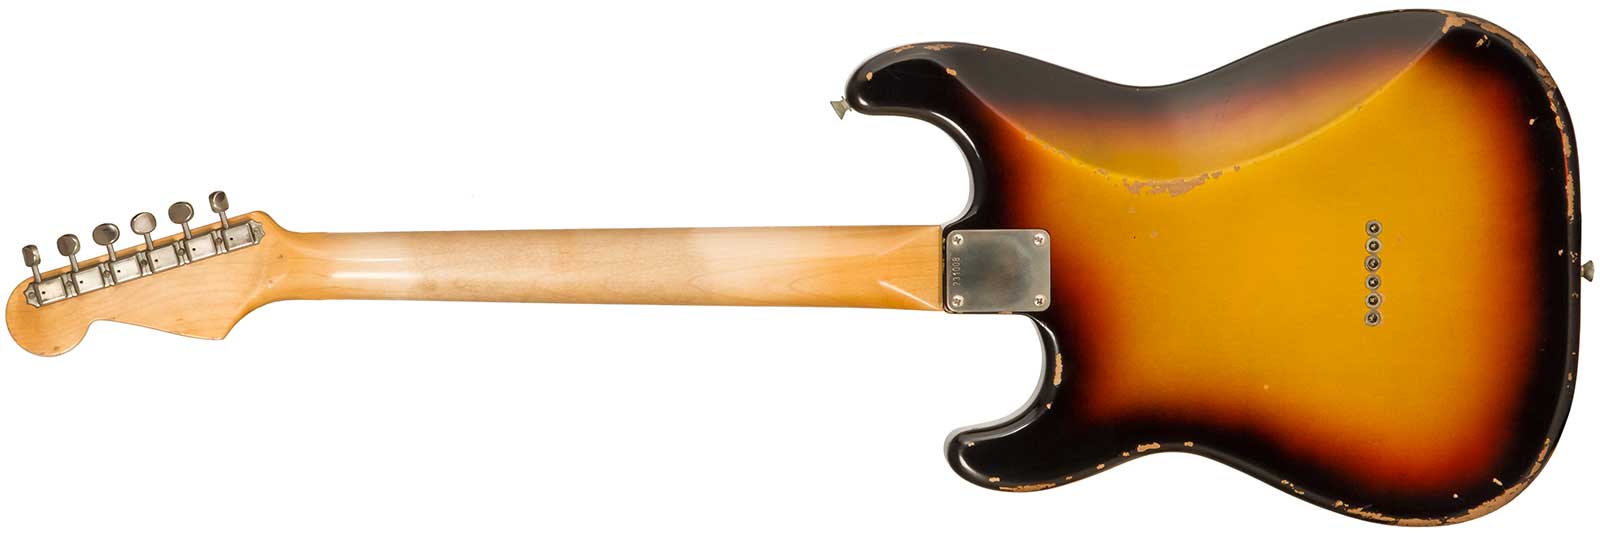 Rebelrelic S-series 1961 Hardtail 3s Ht Rw #231008 - 3-tone Sunburst - Elektrische gitaar in Str-vorm - Variation 1